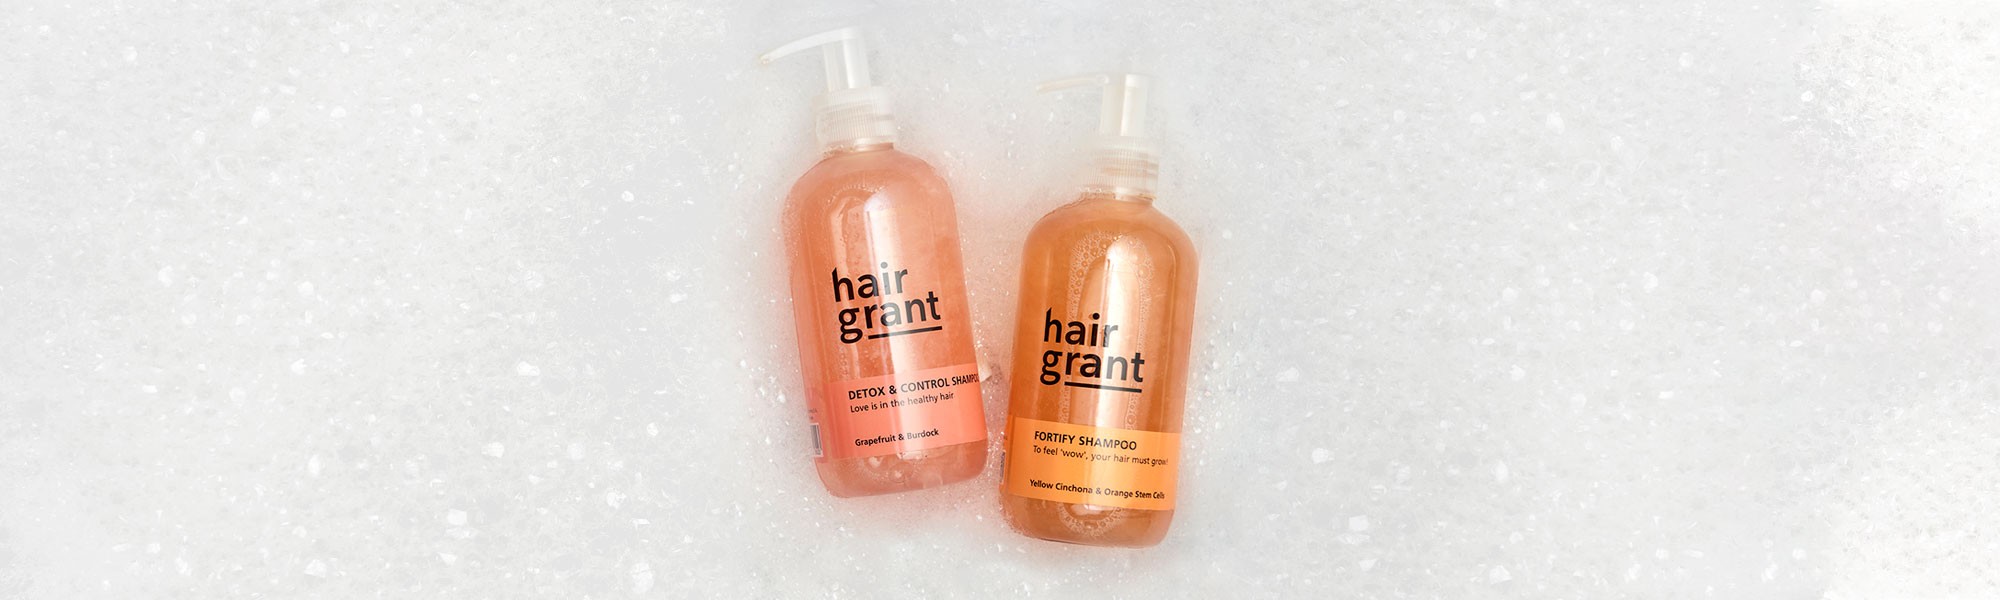 Champú natural para todo tipo de cabello | Hair Grant